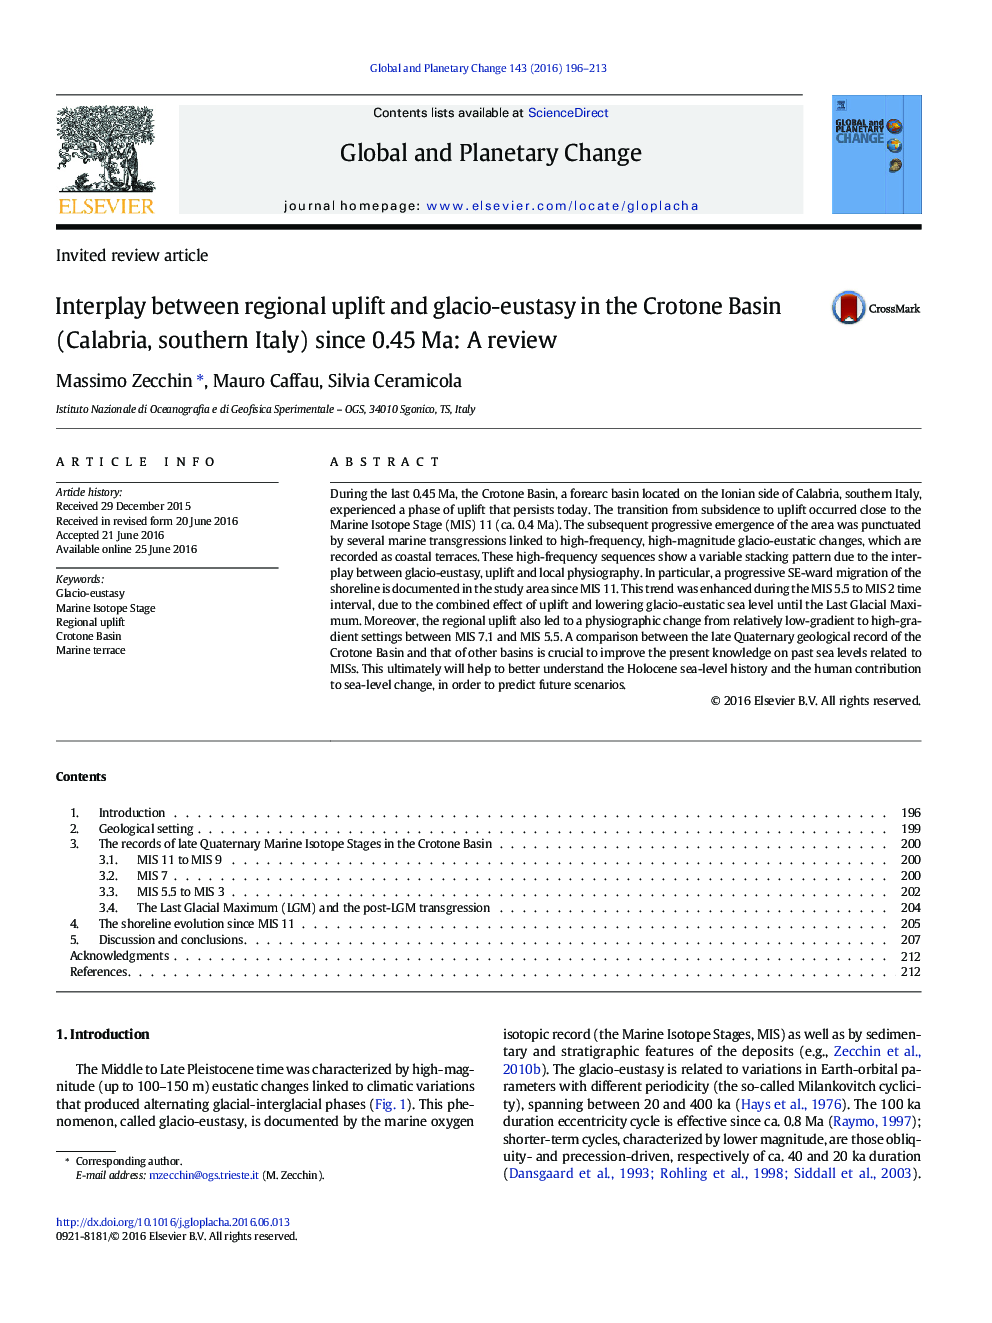 تأثیر متقابل بین بالاآمدگی منطقه ای و گلاسیو-eustasy در حوضه کروتون (کالابریا در جنوب ایتالیا،) از Ma 0.45: بررسی